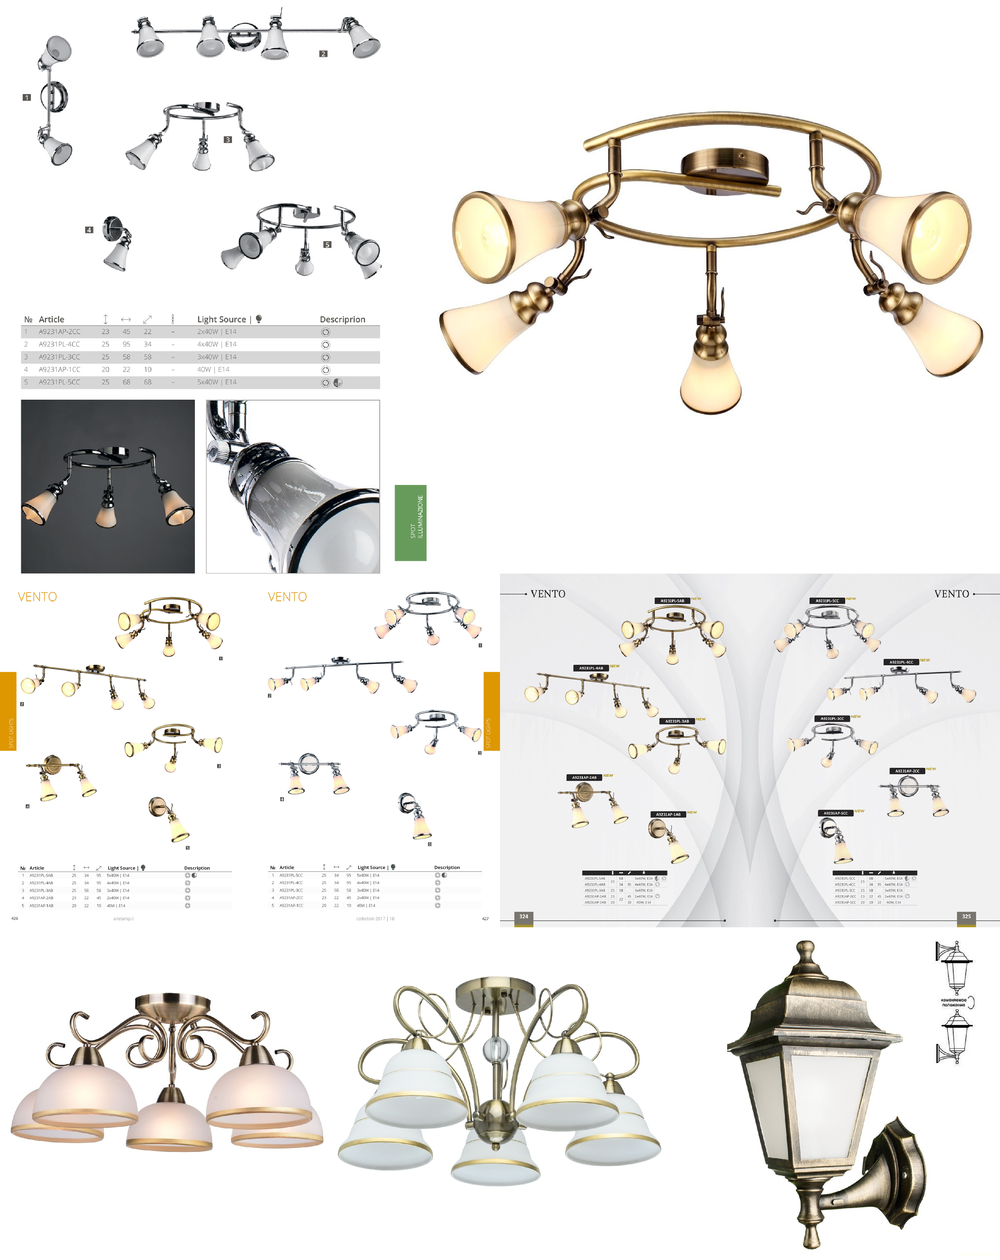 « пять ламп и больше». Arte Lamp серия Vento артикул A9231PL-5AB